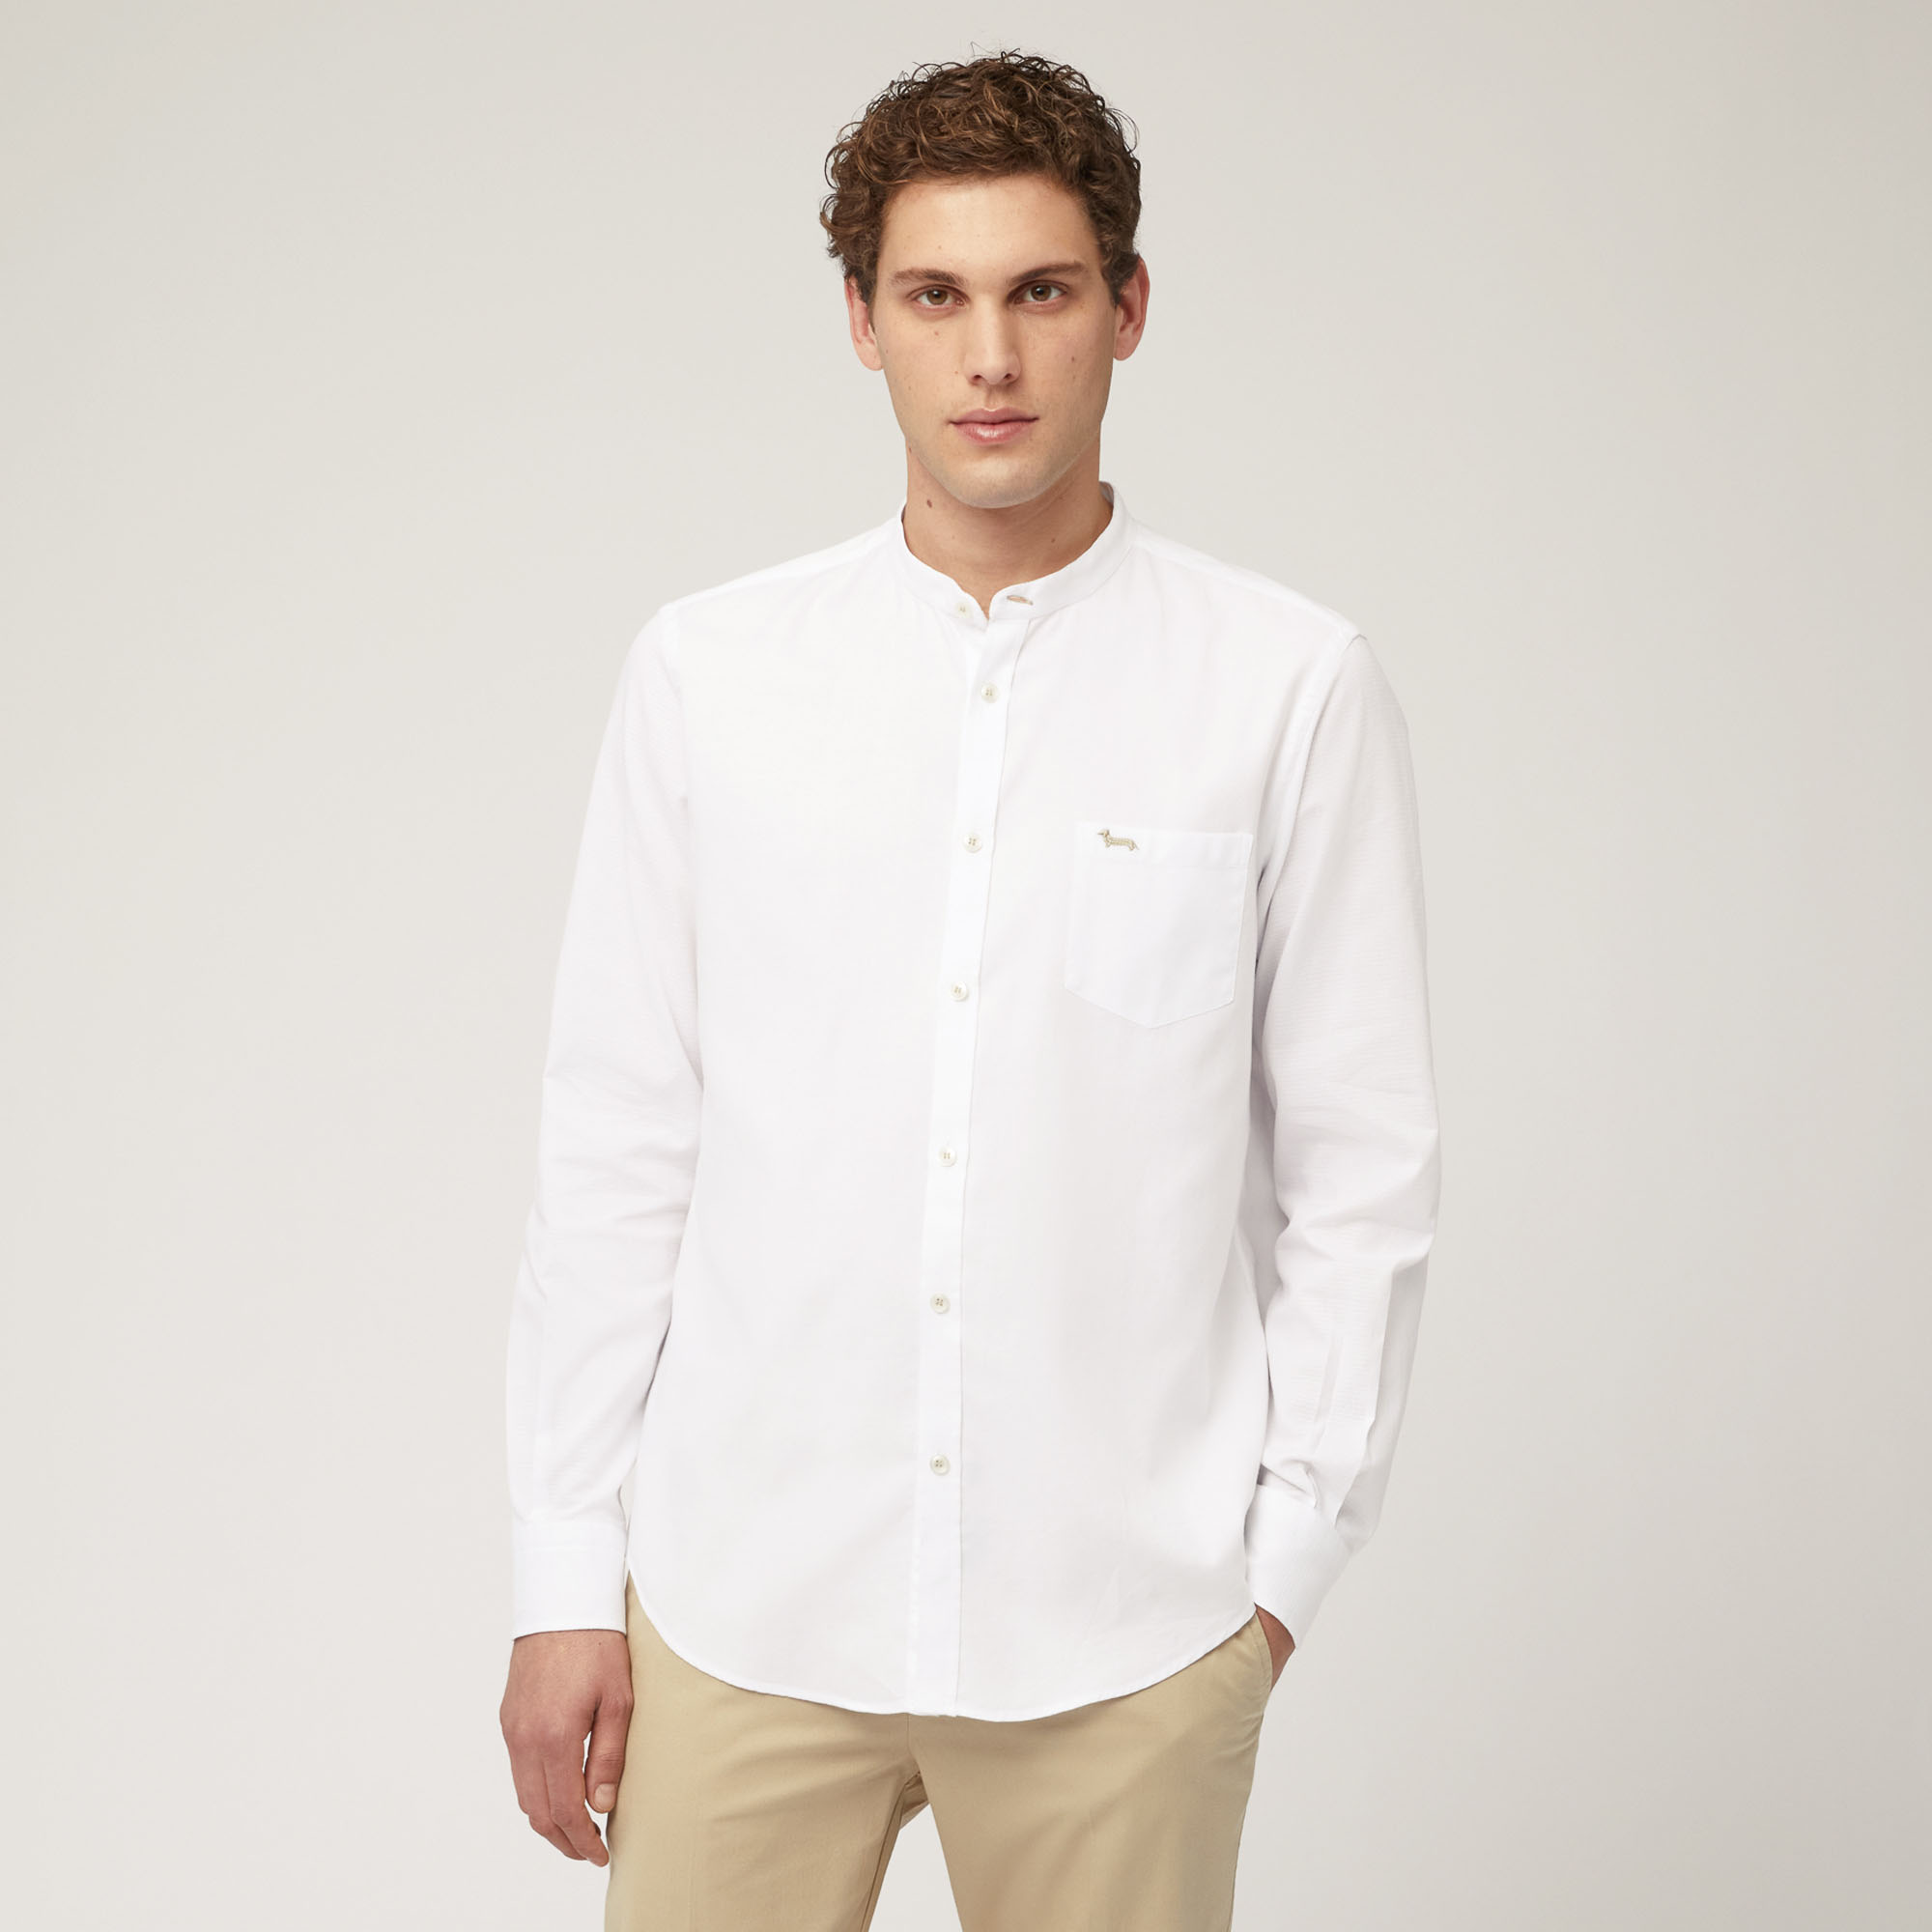 Hemd aus Baumwollkettengewirk mit Stehkragen und Brusttasche, Weiß, large image number 0